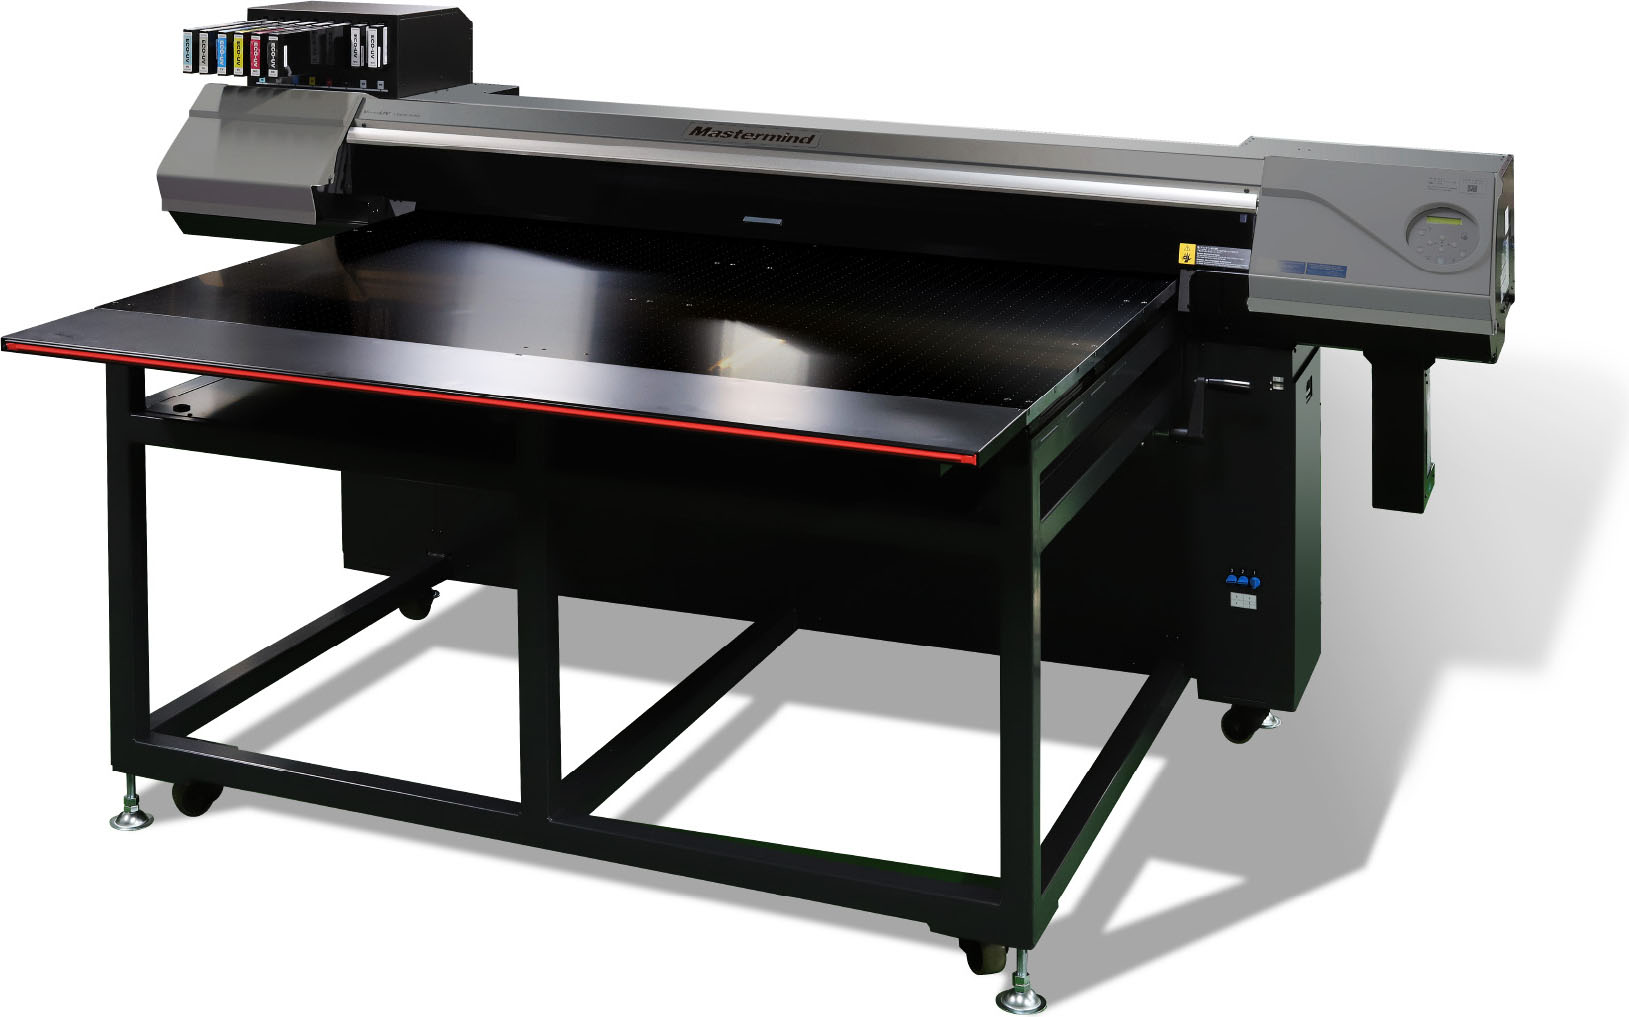 MR2-015　ノベルティーグッズなどの面付用途や大判のディスプレイなど、ロールメディア以外のあらゆる高品質な印刷が可能。